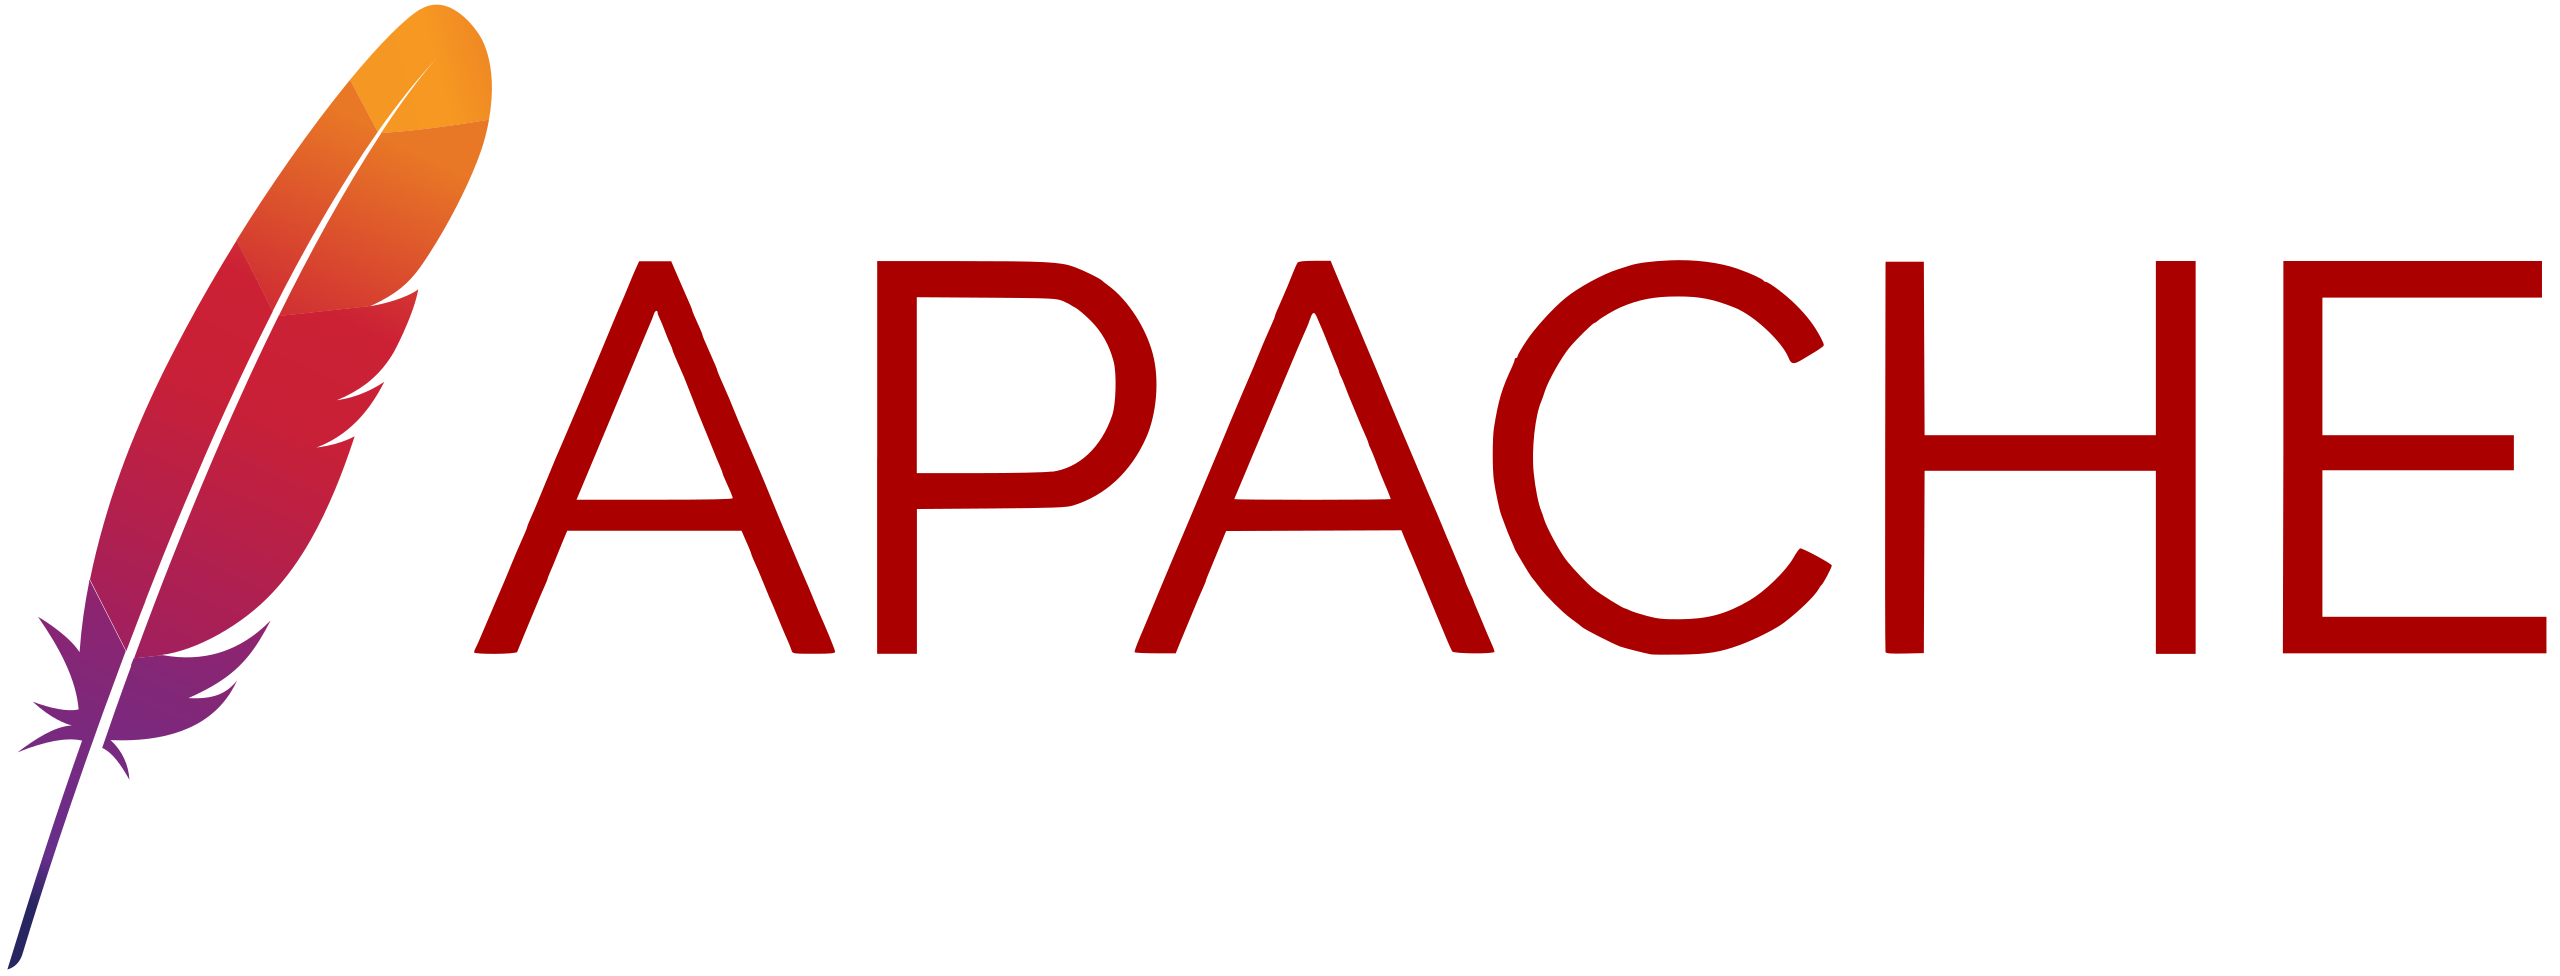 Apache vendor logo